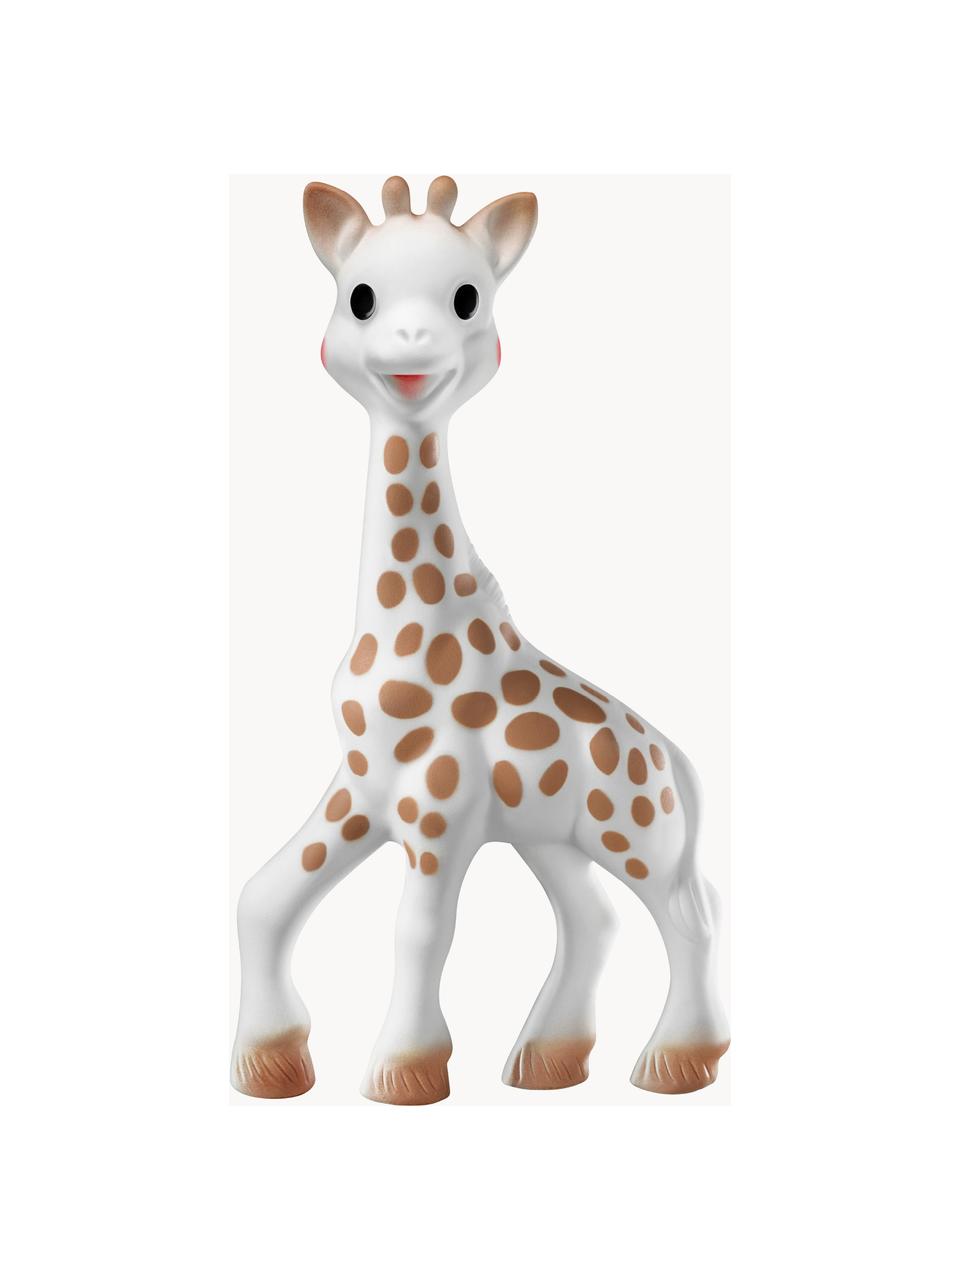 Sada hračky v látkovém pytlíku Sophie la girafe, 2 díly, Bílá, hnědá, Sada s různými velikostmi